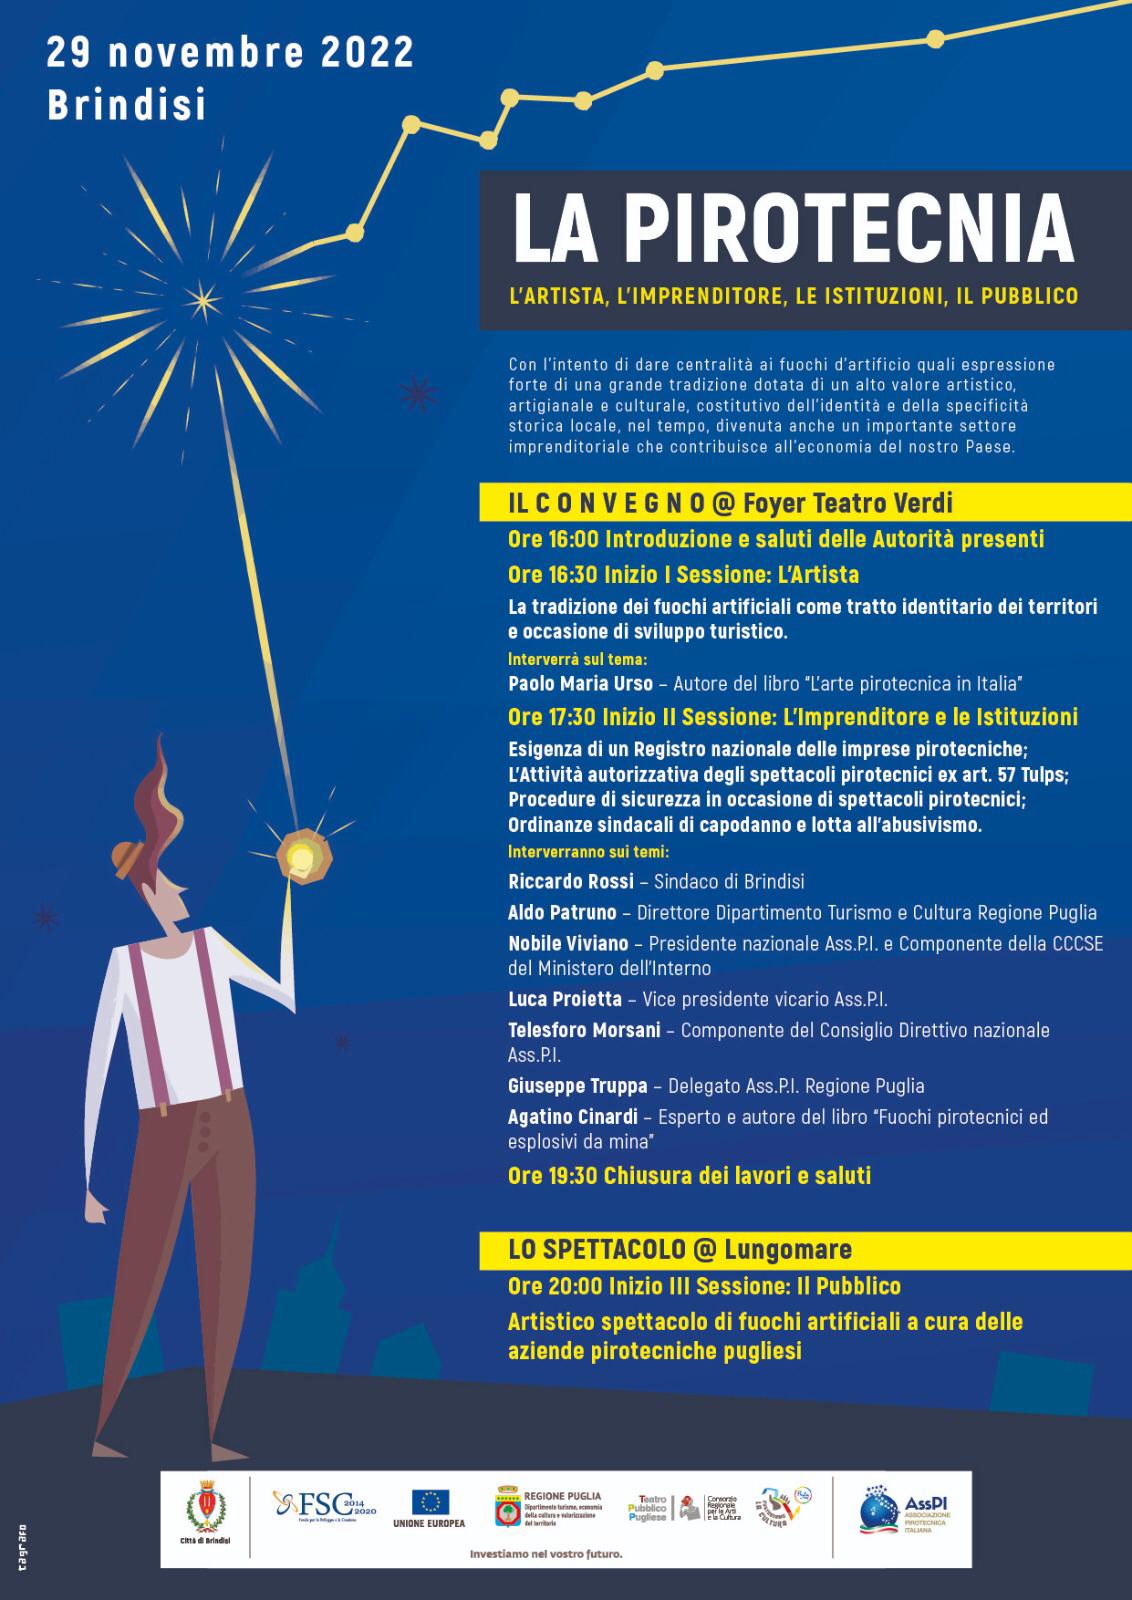 Brindisi, La Pirotecnia: la tradizione culturale e artigianale dei fuochi d'artificio